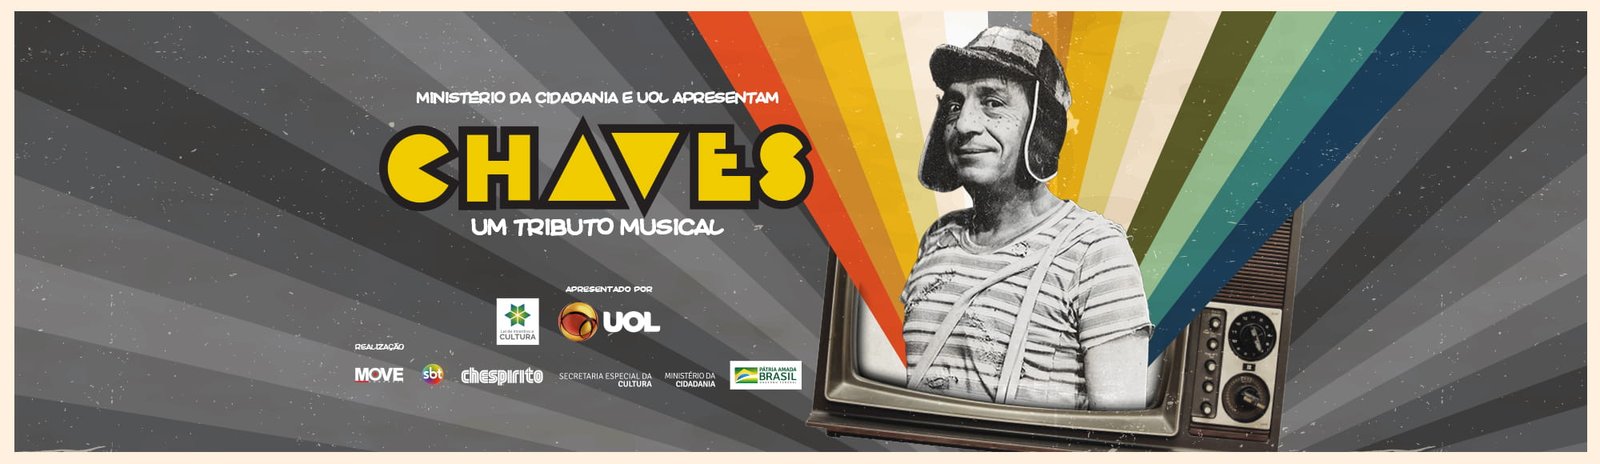 musical chaves - Veja o esquete de abertura do Musical de Chaves